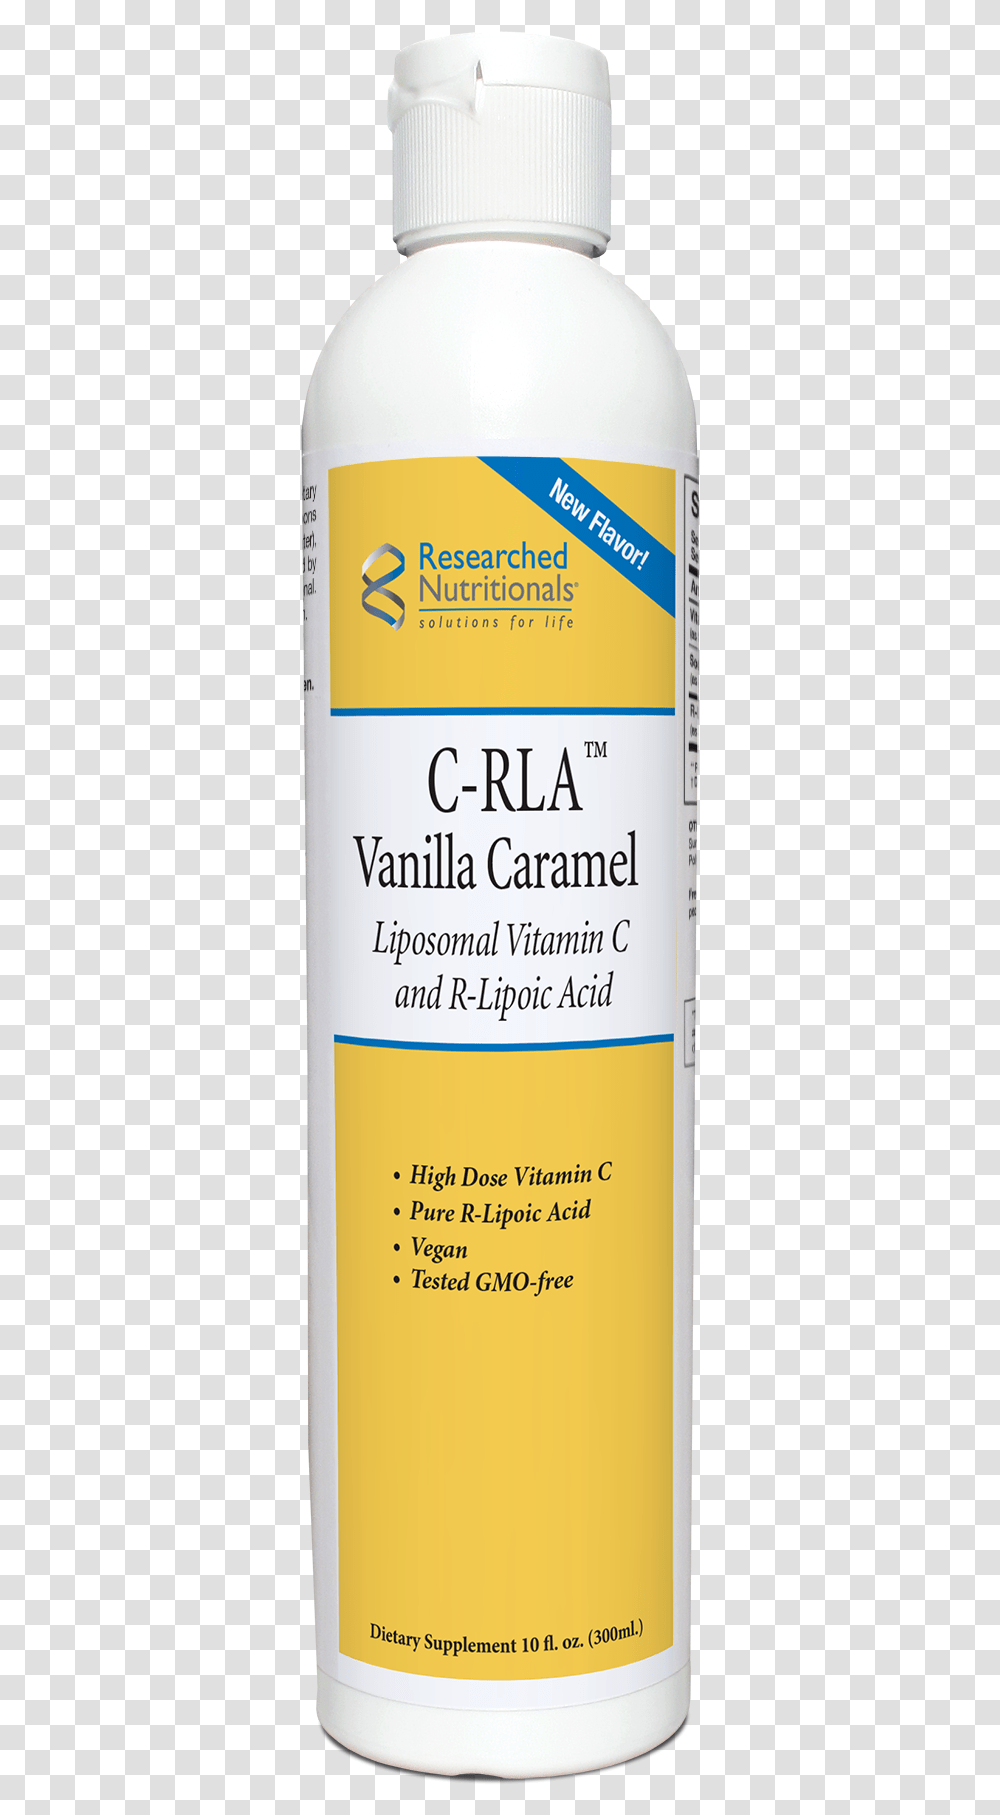 C Rla Vanilla Caramel 1218 Cosmetics, Tin, Can, Aluminium, Spray Can Transparent Png